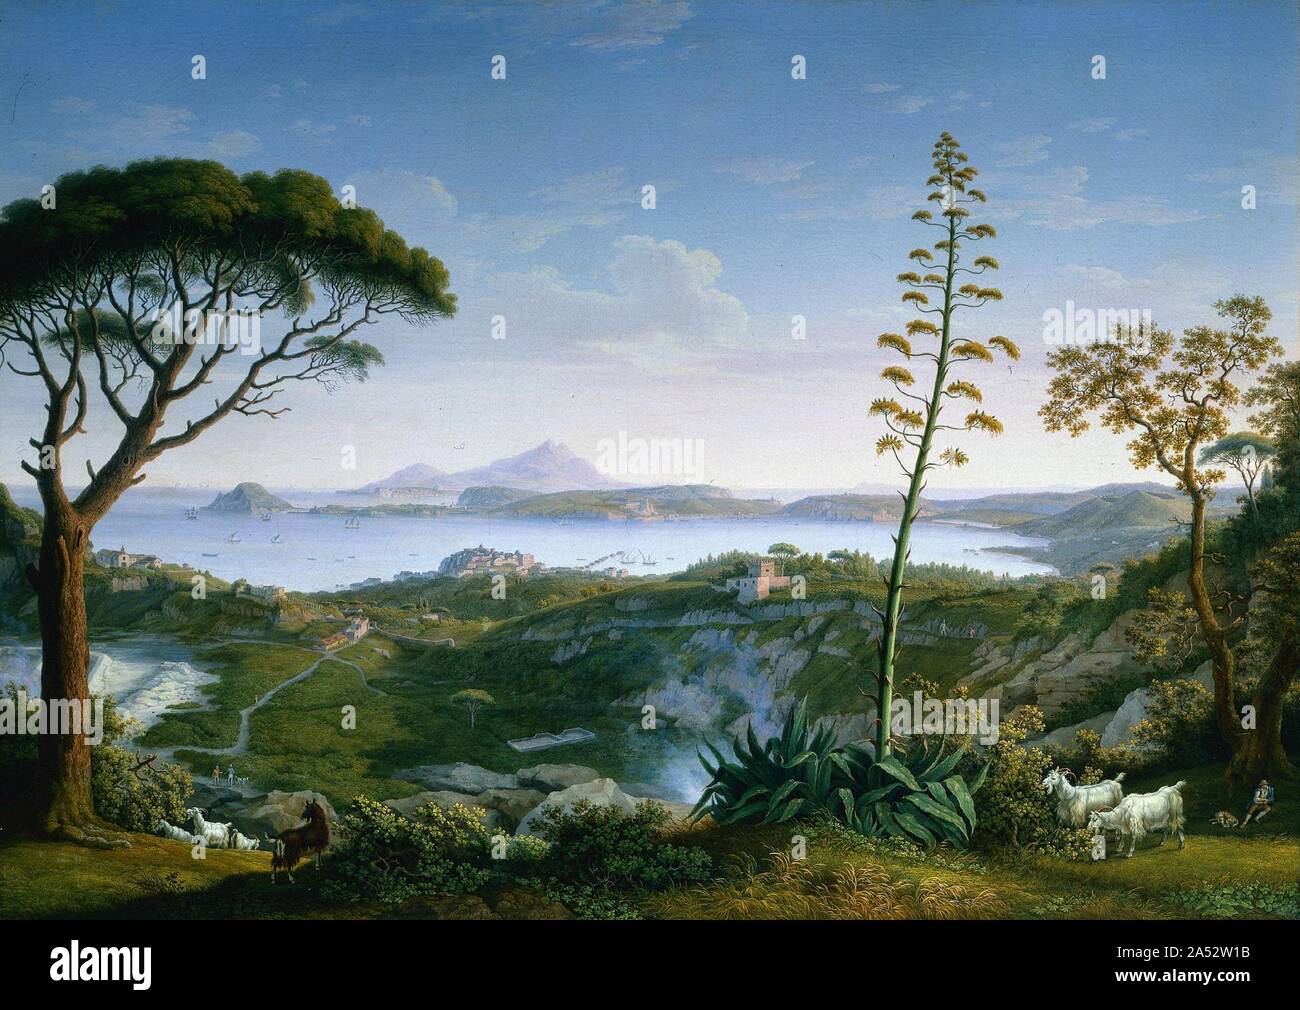 Vue sur le Golfe de Pozzuoli, Solfatara de 1803. Attirés par ses paysages spectaculaires, volcans, exotique et paysans, ruines classiques, paysagistes de l'Années 1700 et 1800 se sont rendus à la campagne autour de Naples. Ce point de vue ressemble à l'ouest vers le Golfe de Pozzuoli à partir de juste au-dessus de la Solfatara, une zone volcanique d'évents à vapeur. L'ancienne ville de Pozzuoli, où l'apôtre Paul a atterri sur son chemin vers Rome, se trouve dans la distance. L'Hackert l'attention au détail et le rendu de la forme avec une extrême lucidité est caractéristique de la peinture romantique allemande. Banque D'Images